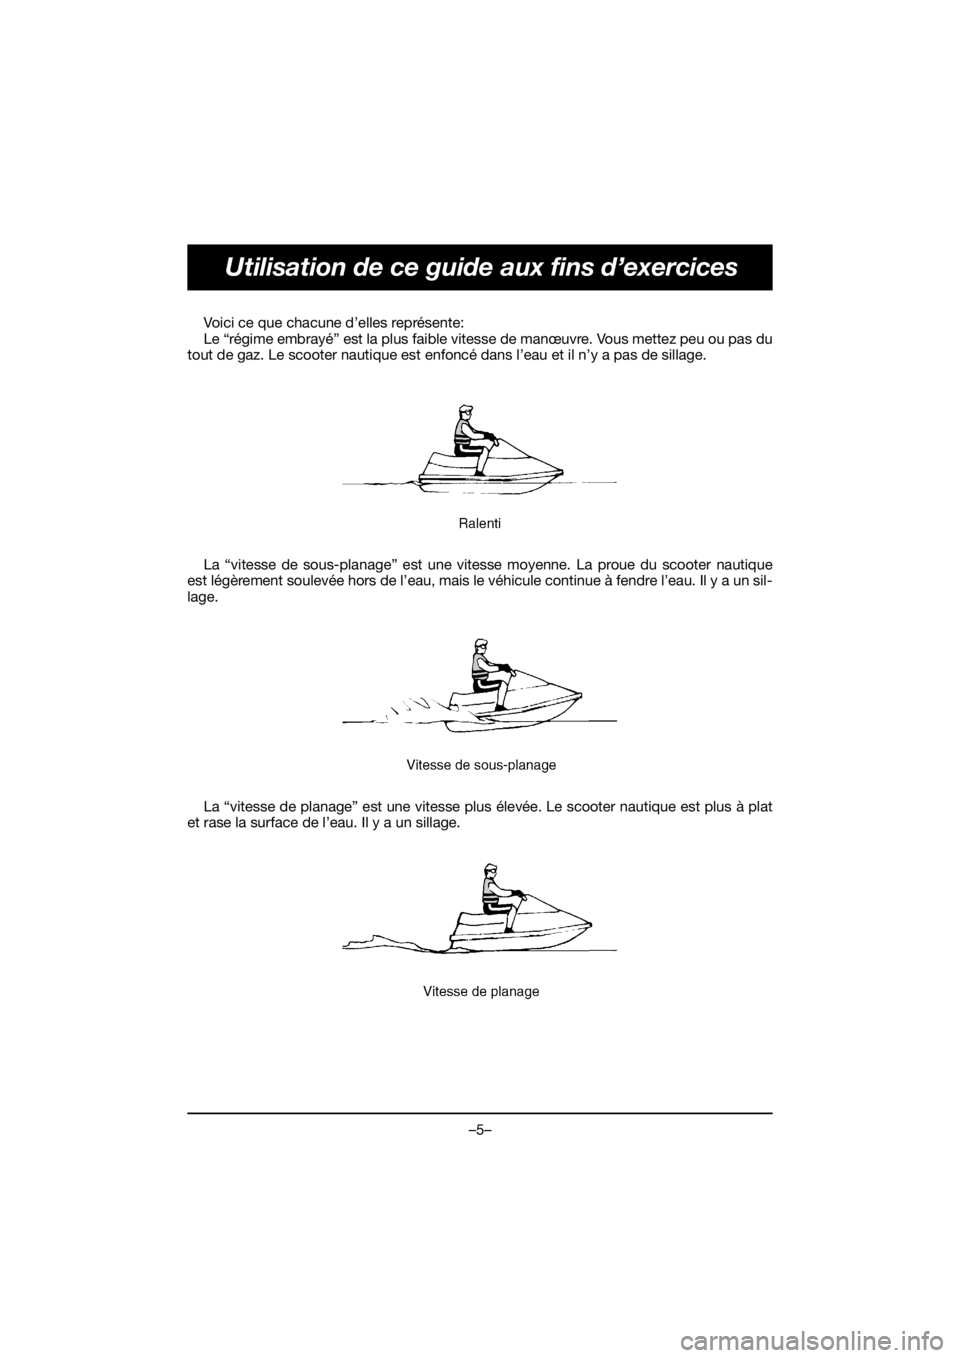 YAMAHA VX DELUXE 2019  Manuale de Empleo (in Spanish) –5–
Utilisation de ce guide aux fins d’exercices
Voici ce que chacune d’elles représente: 
Le “régime embrayé” est la plus faible vitesse de manœuvre. Vous mettez peu ou pas du
tout de